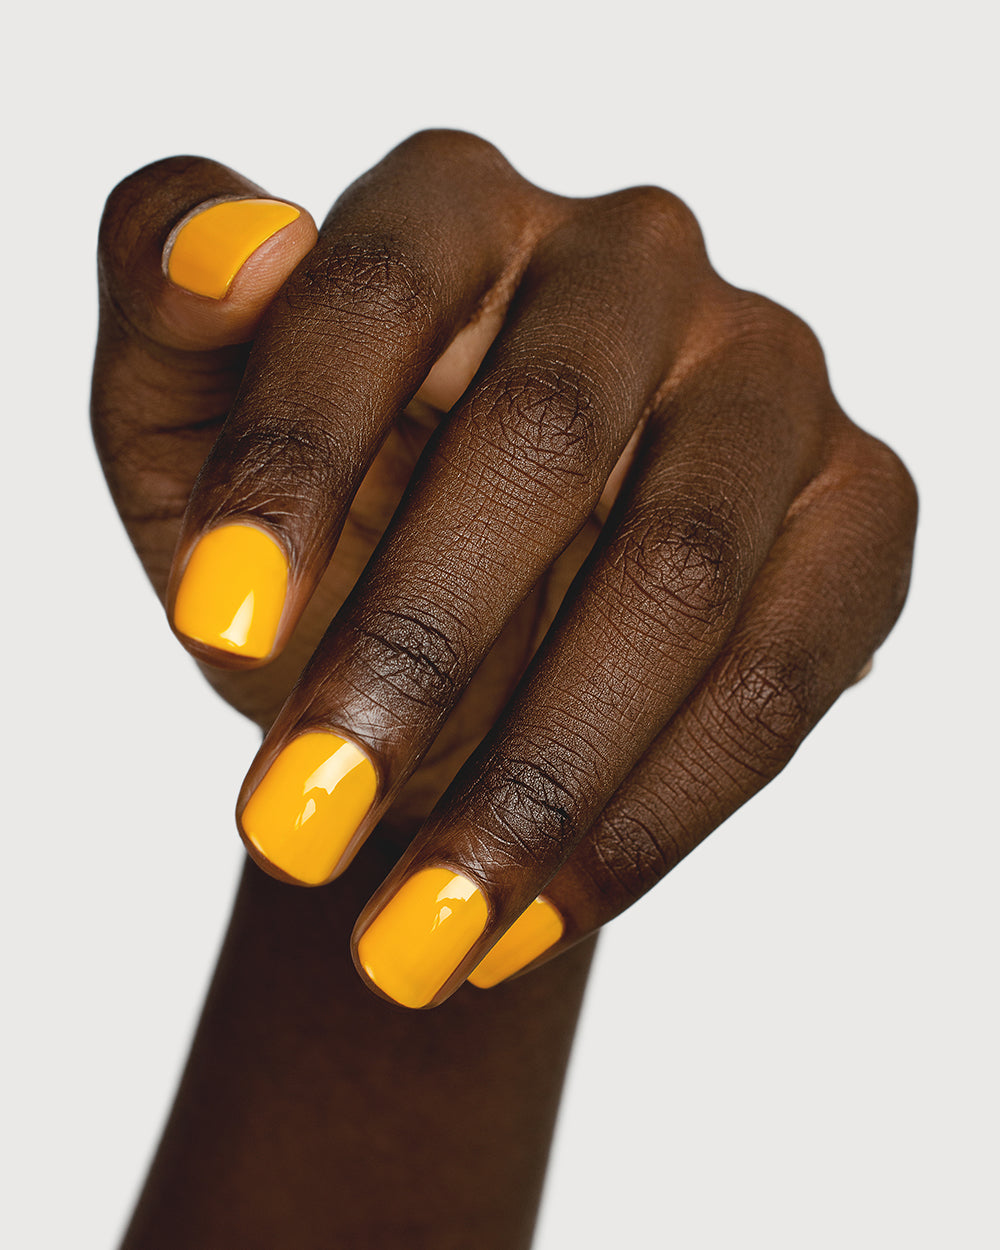 17 Nail Colors That Flatter Dark Skin | Dark skin manicure, Nail colors,  Fall nail colors